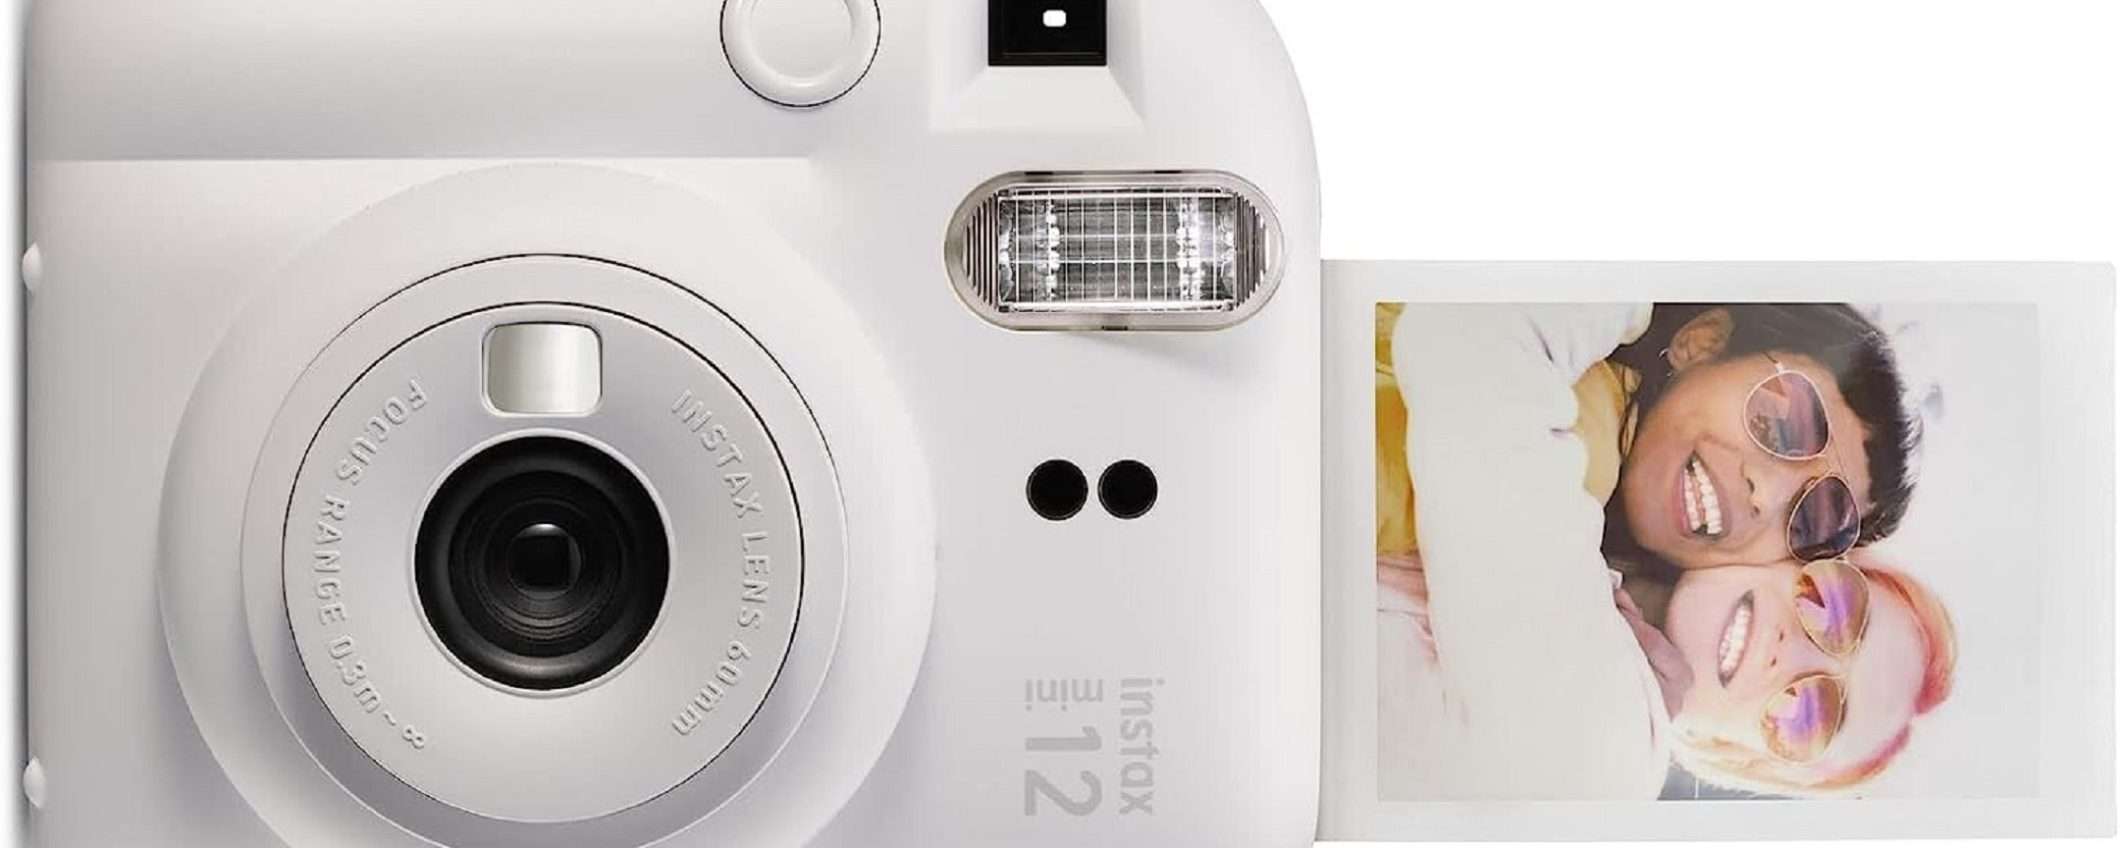 Fujifilm Instax Mini 12: foto istantanee ottime a un prezzo PAZZESCO